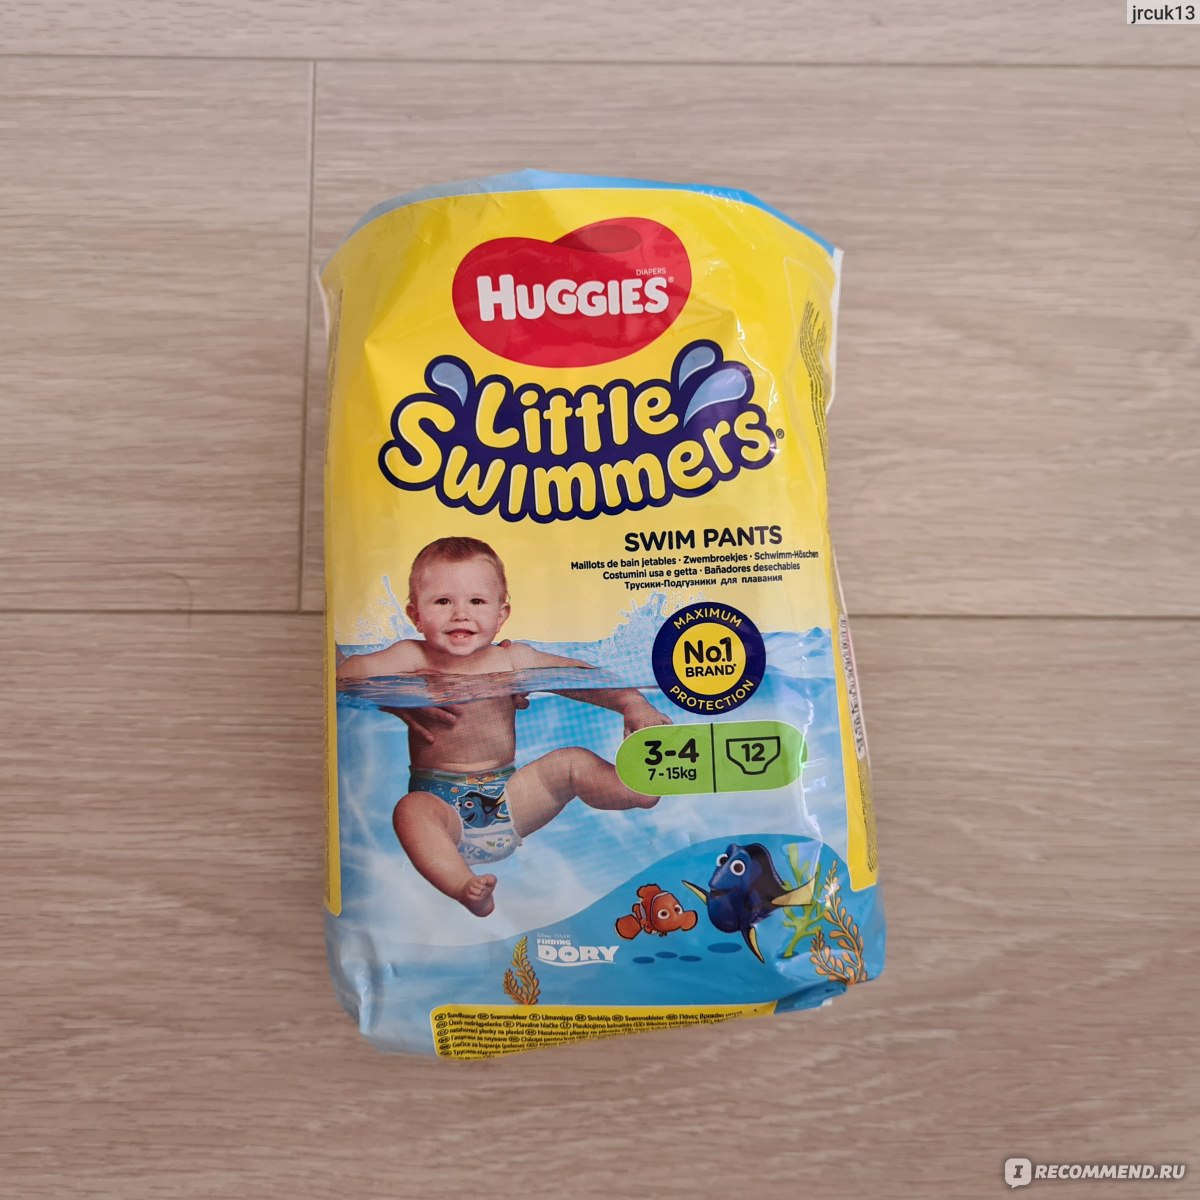 Подгузники-трусики Huggies Little Swimmers для плавания - « «Huggies LittleSwimmers» - недорогие подгузники-трусики для грудничкового плавания.»